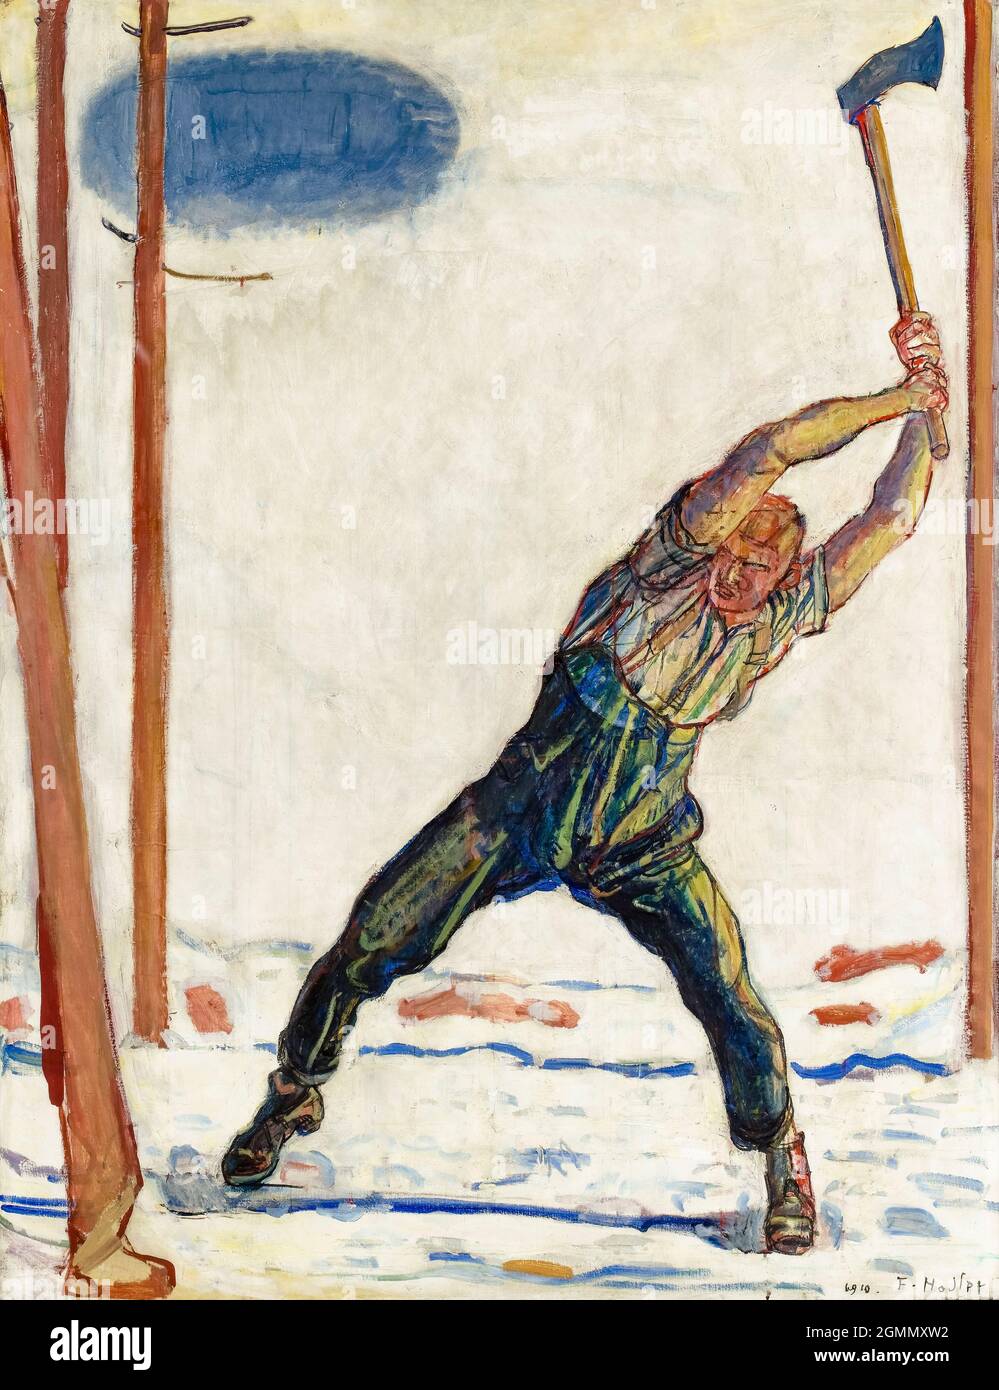 Ferdinand Hodler, Gemälde, der Holzfäller, 1910 Stockfoto